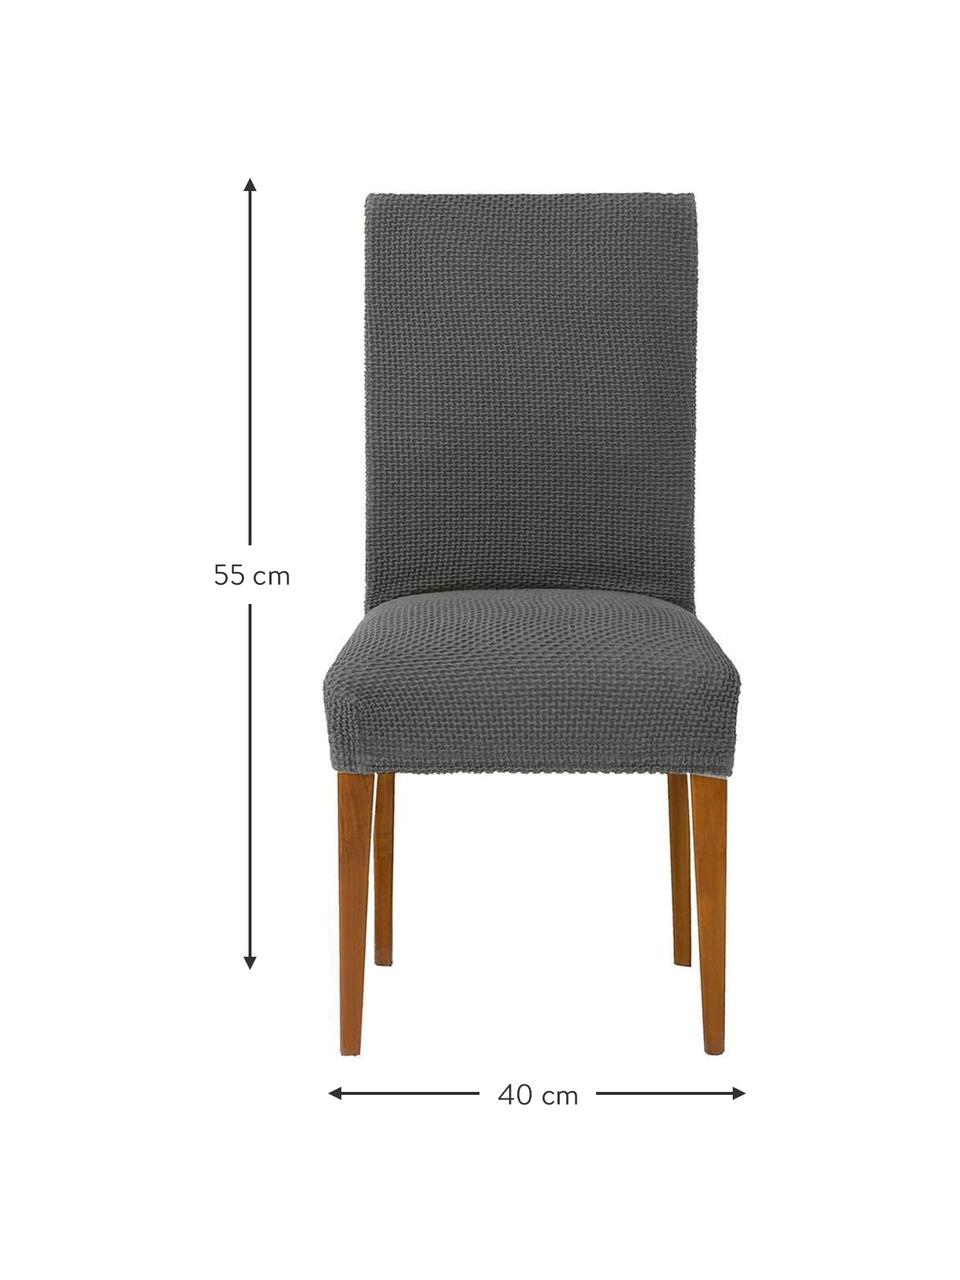 Fundas para silla Cora, 2 uds., 55% poliéster, 30% algodón, 15% elastomero, Gris, An 40 x Al 55 cm